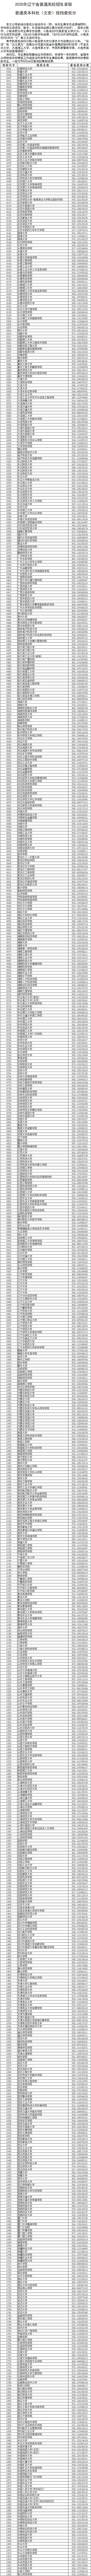 2020辽宁本科批投档最低分及院校代码一览表